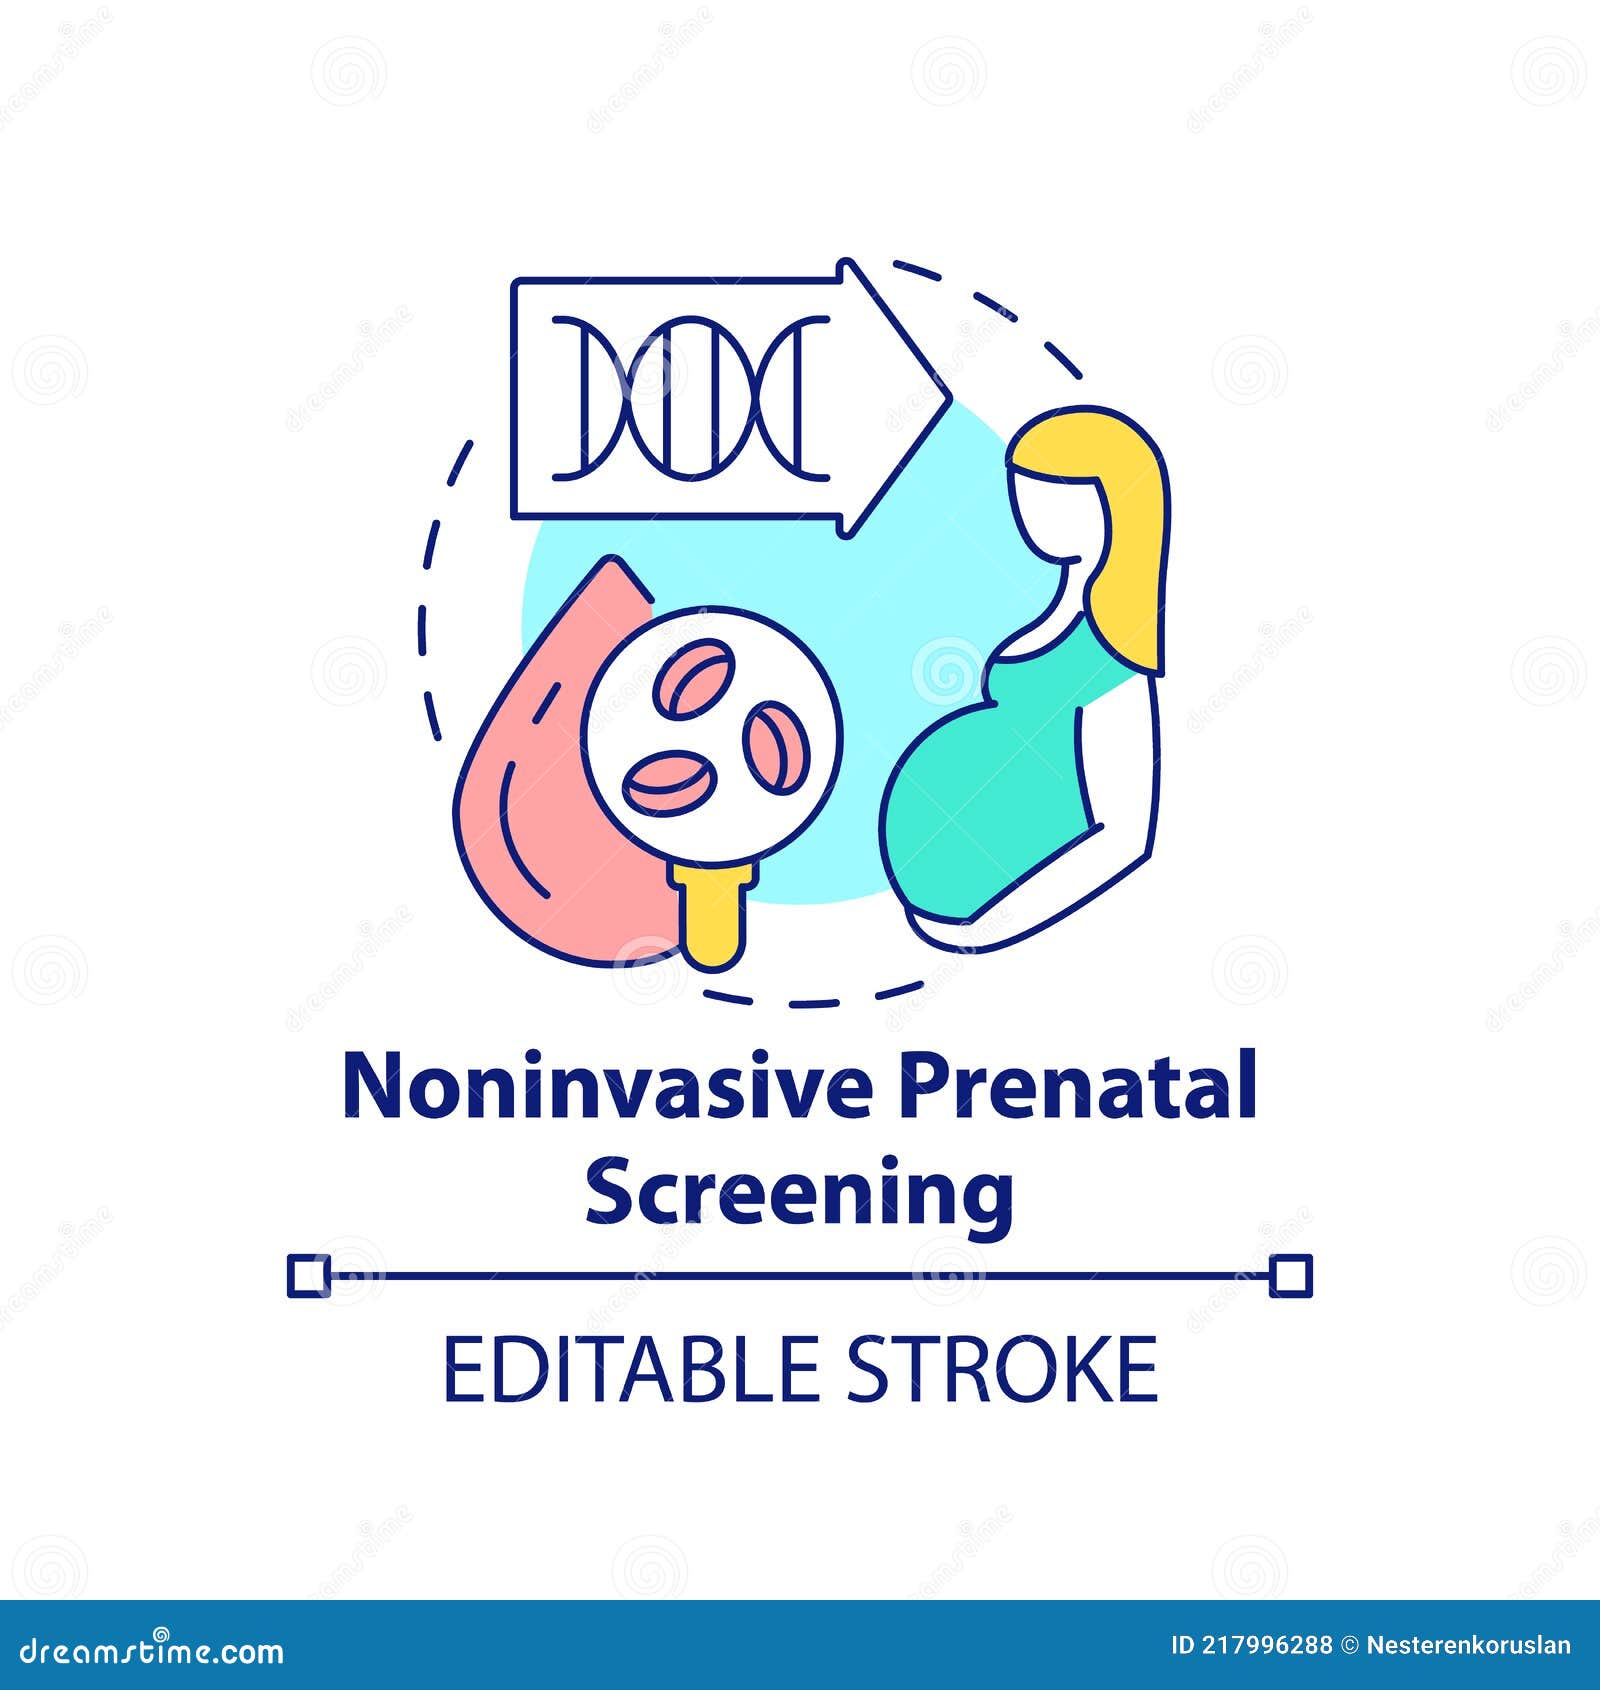 noninvasive prenatal screening concept icon